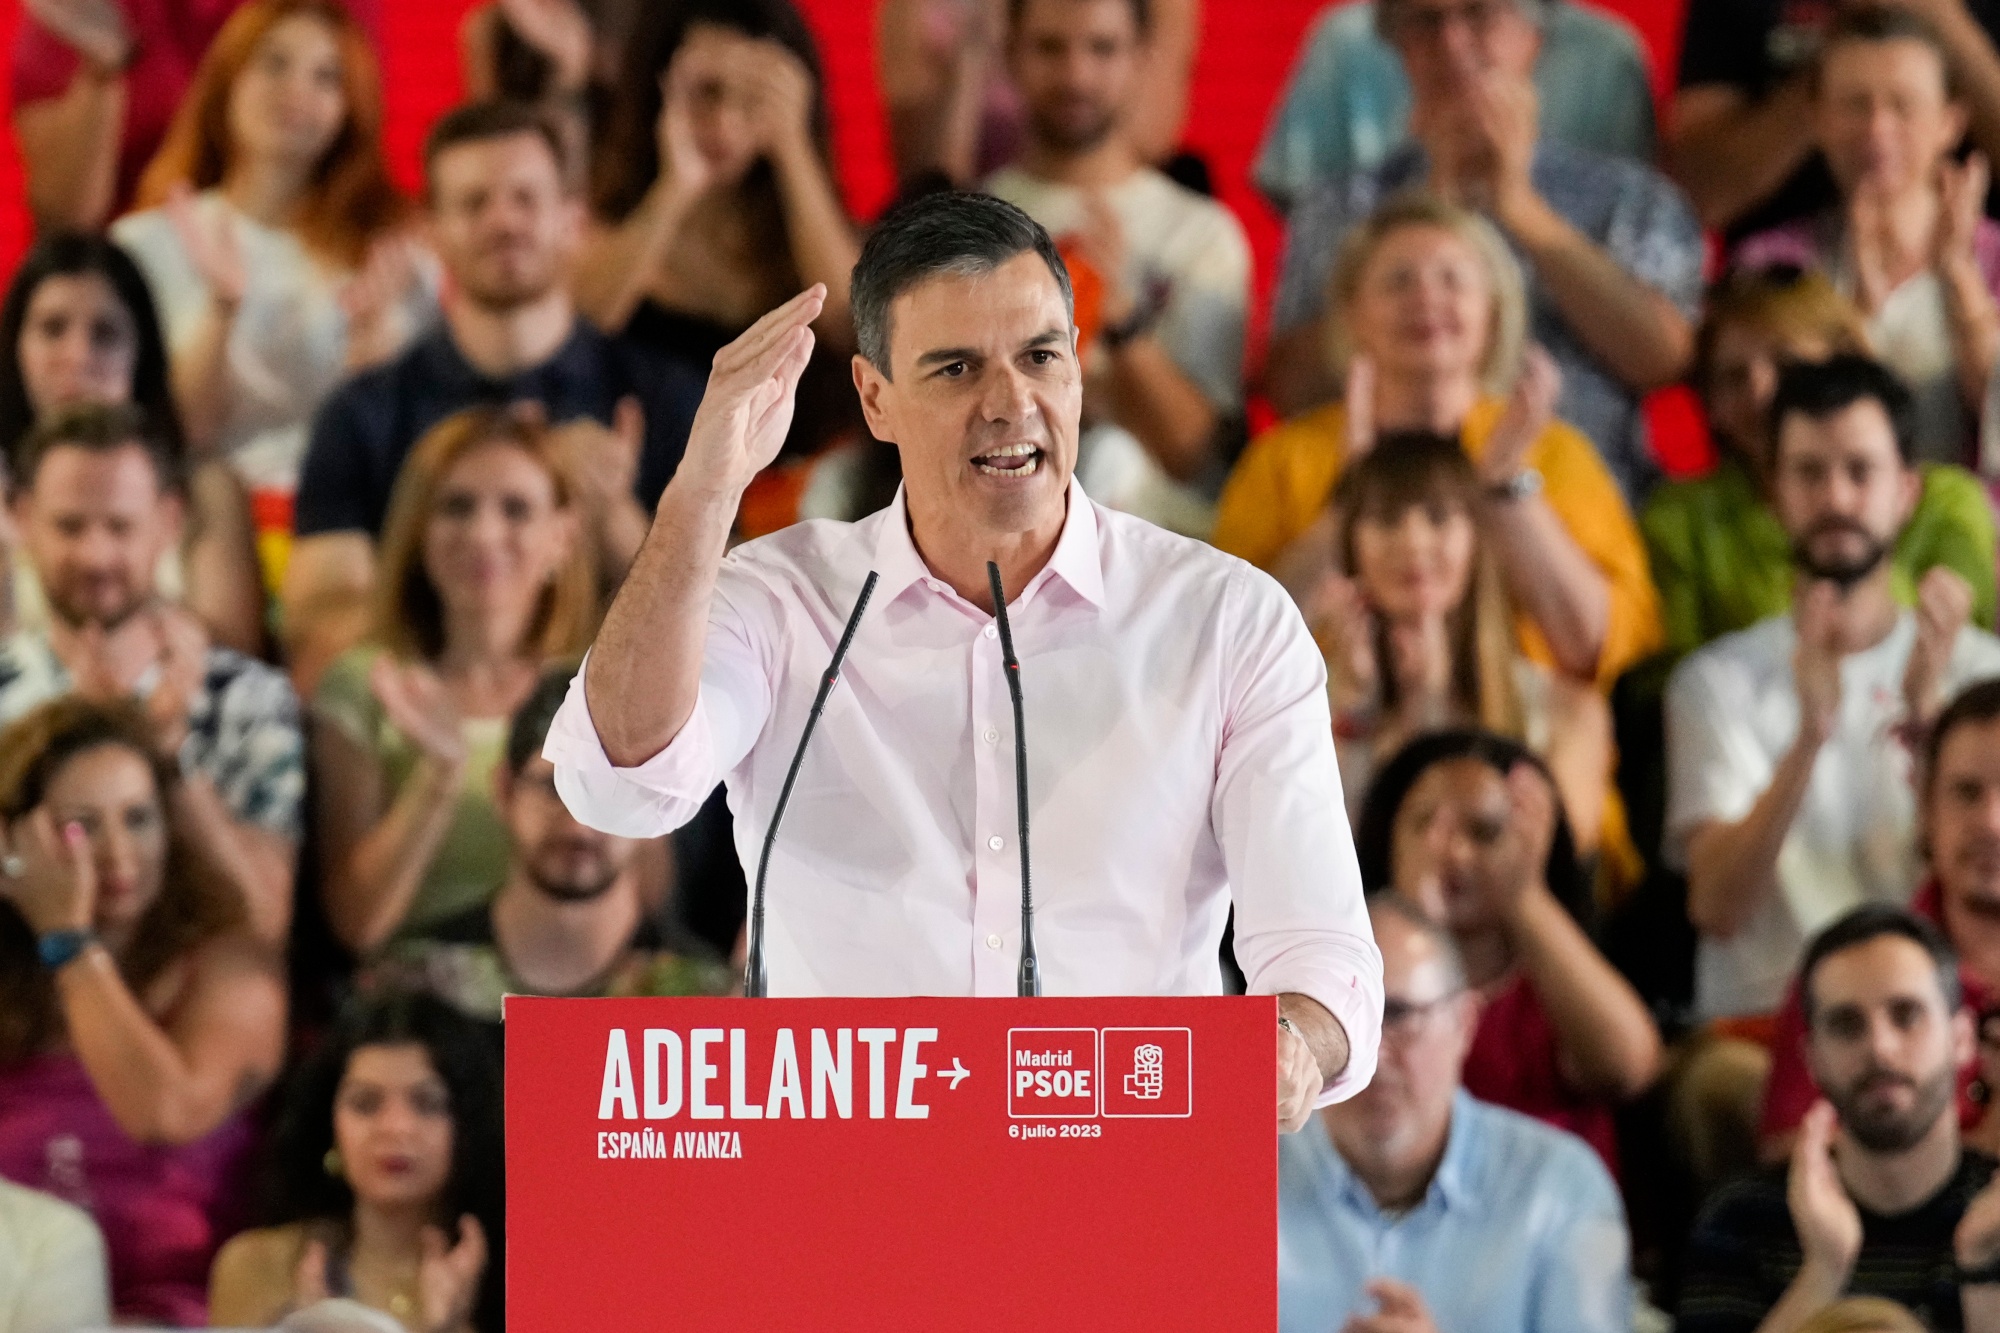 Pedro Sánchez replantea su futuro político ante el lawfare de la ultraderecha contra su esposa